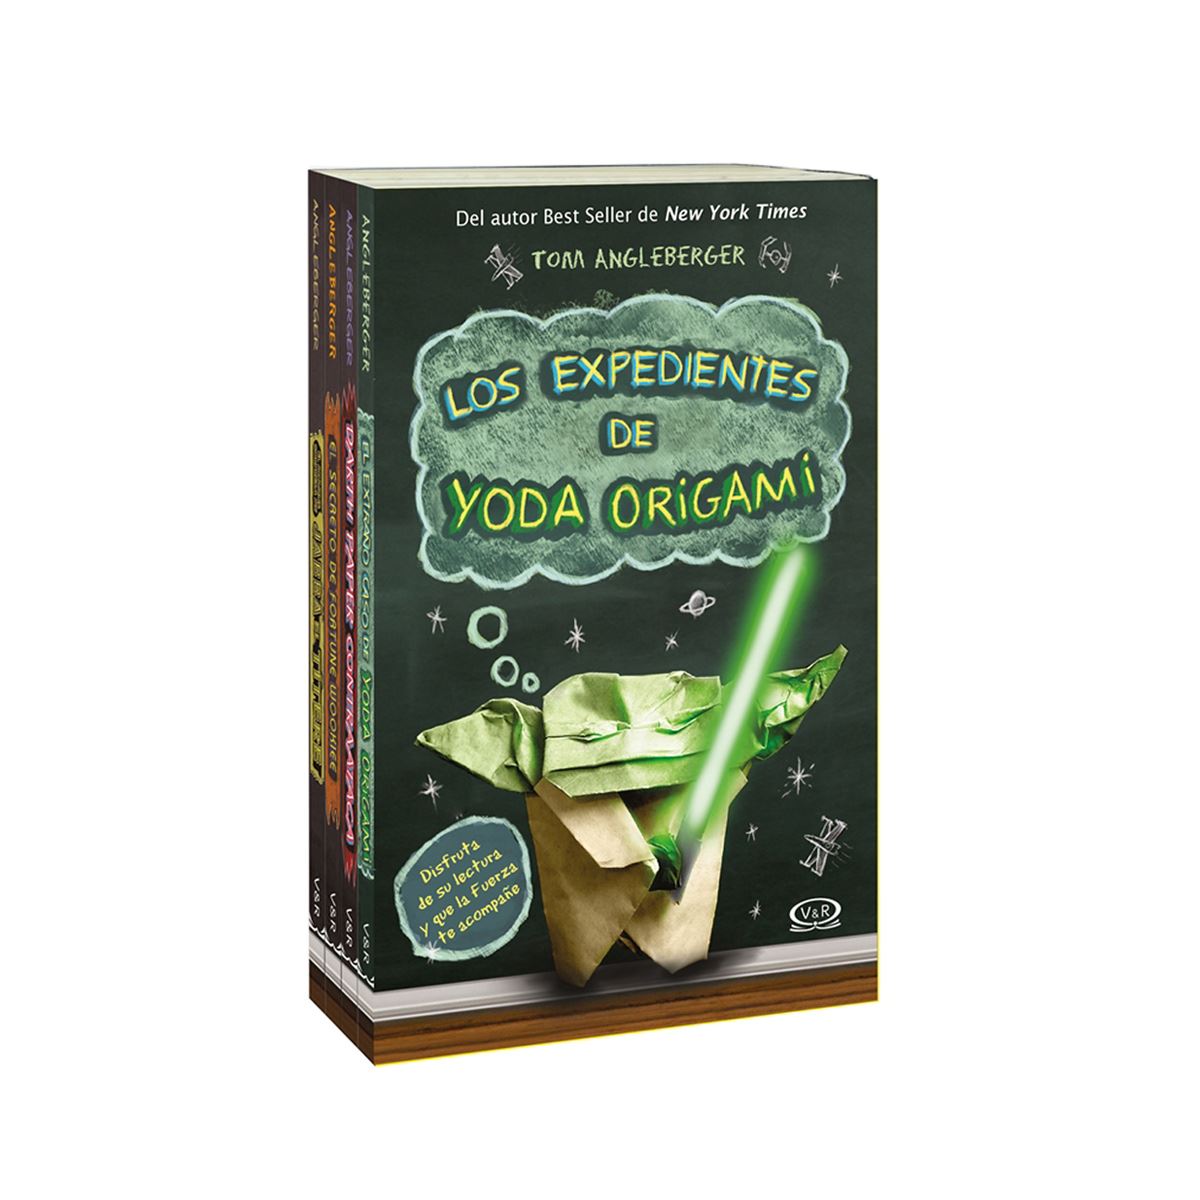 Los Expedientes de Yoda Origami